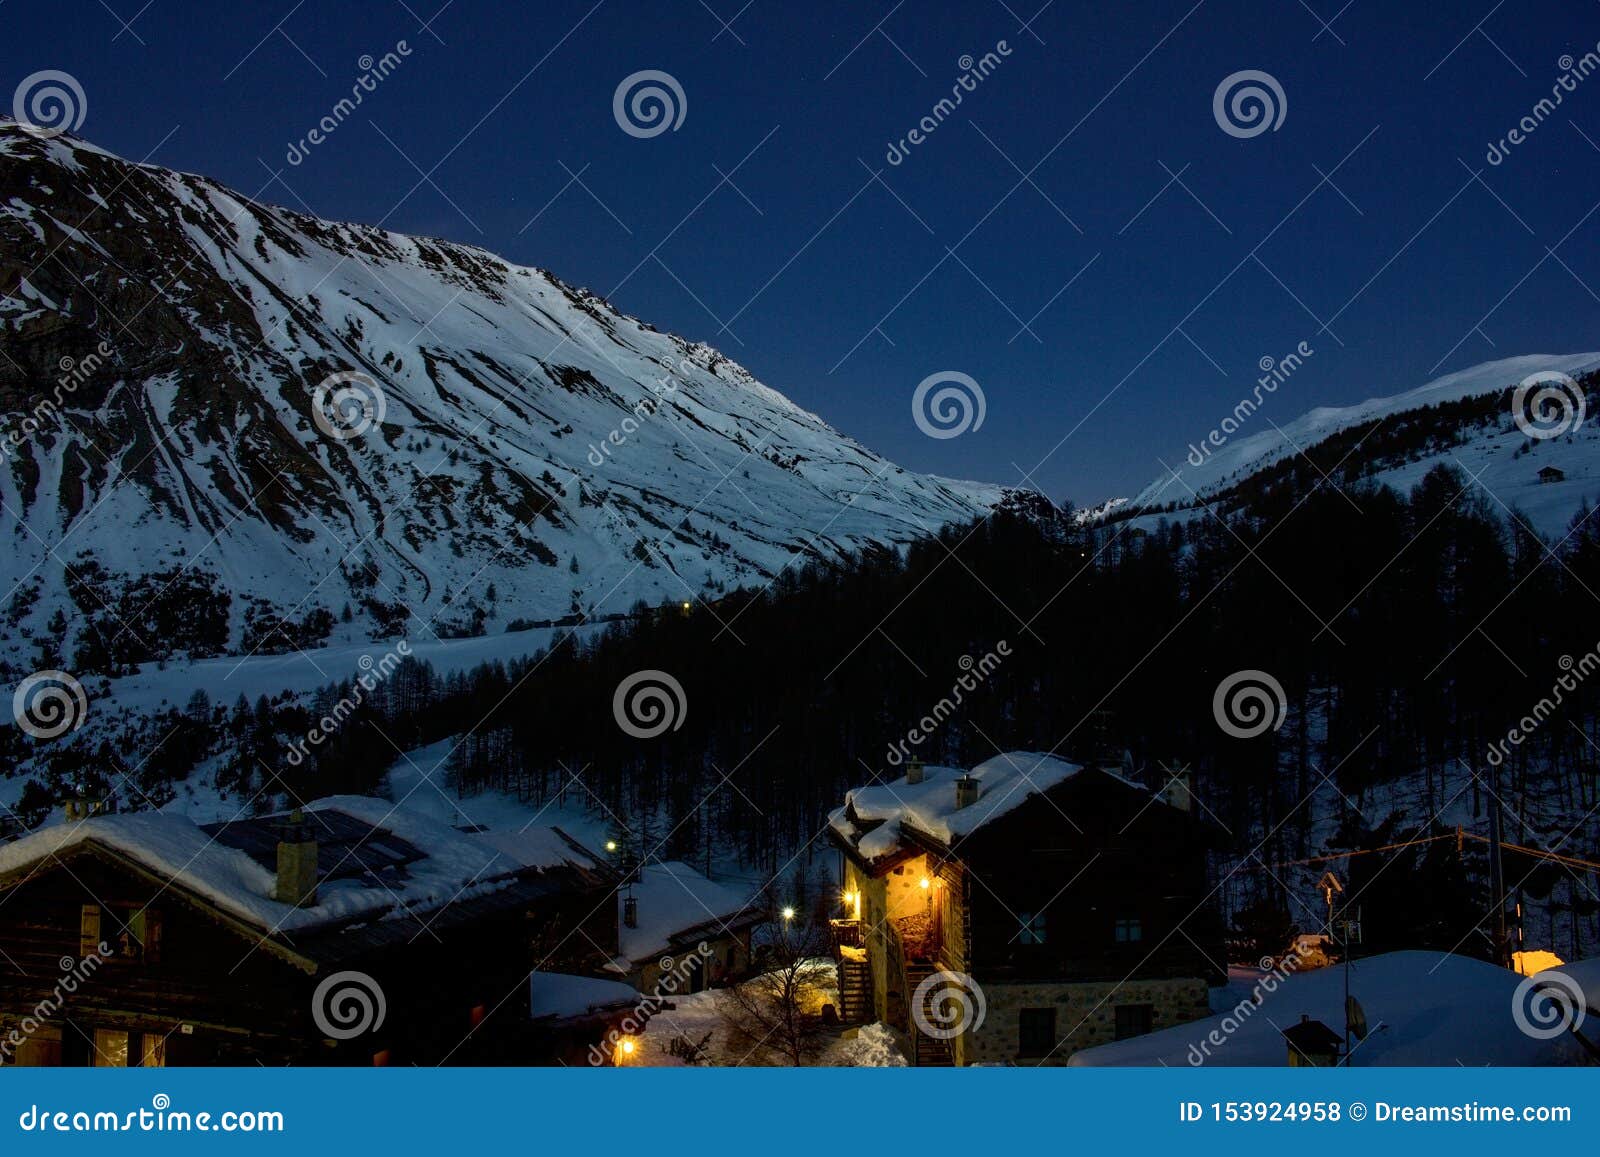 night sky ski mountains livigno view